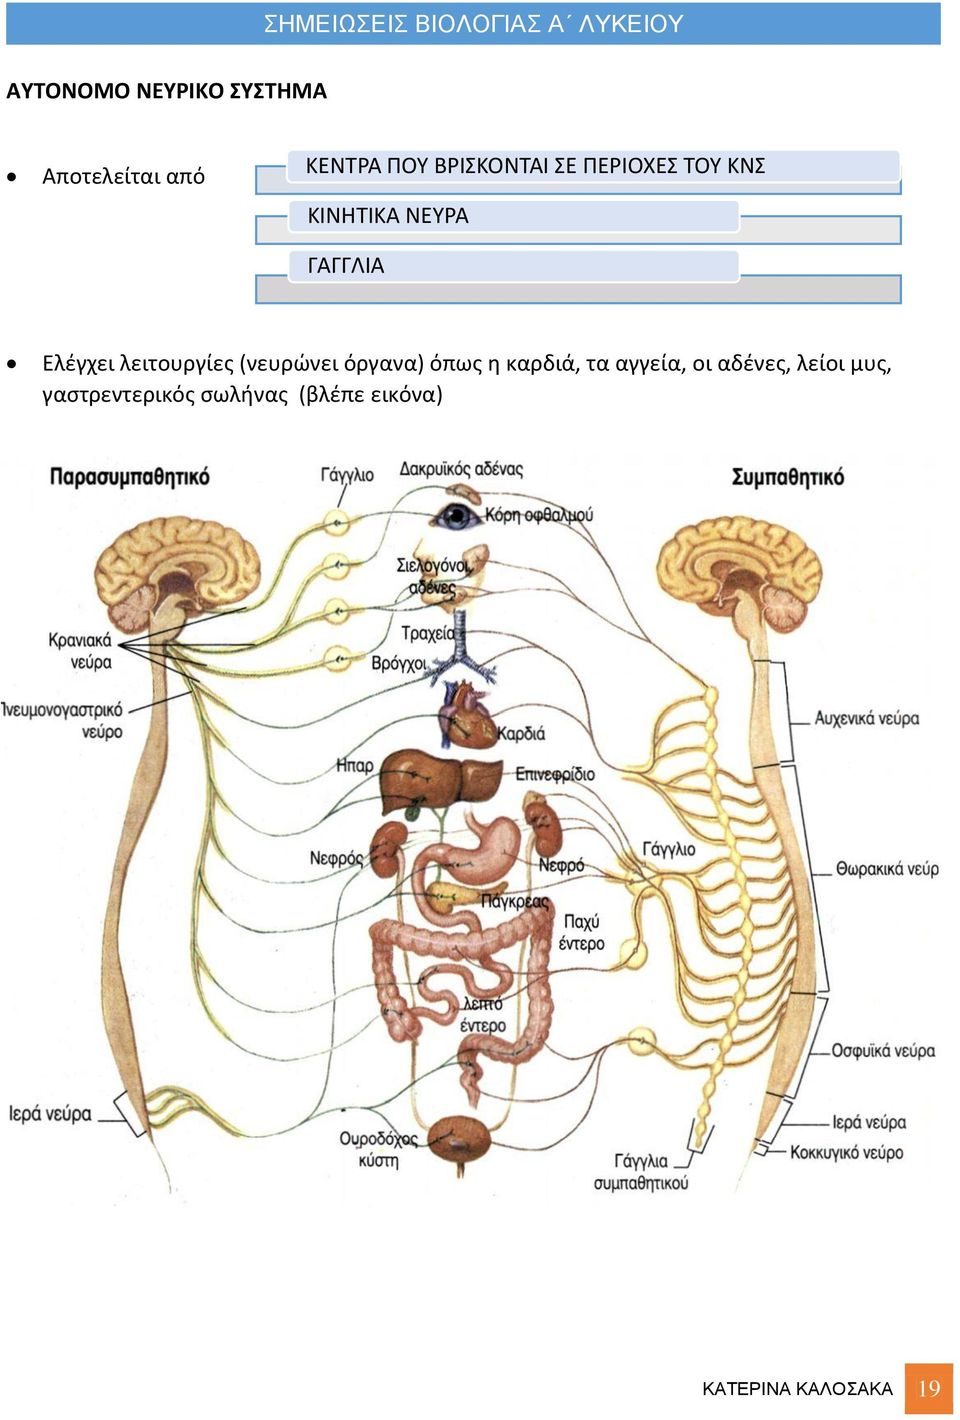 αδένες, λείοι μυς, γαστρεντερικός σωλήνας (βλέπε εικόνα) Διακρίνεται σε Συμπαθητικό και